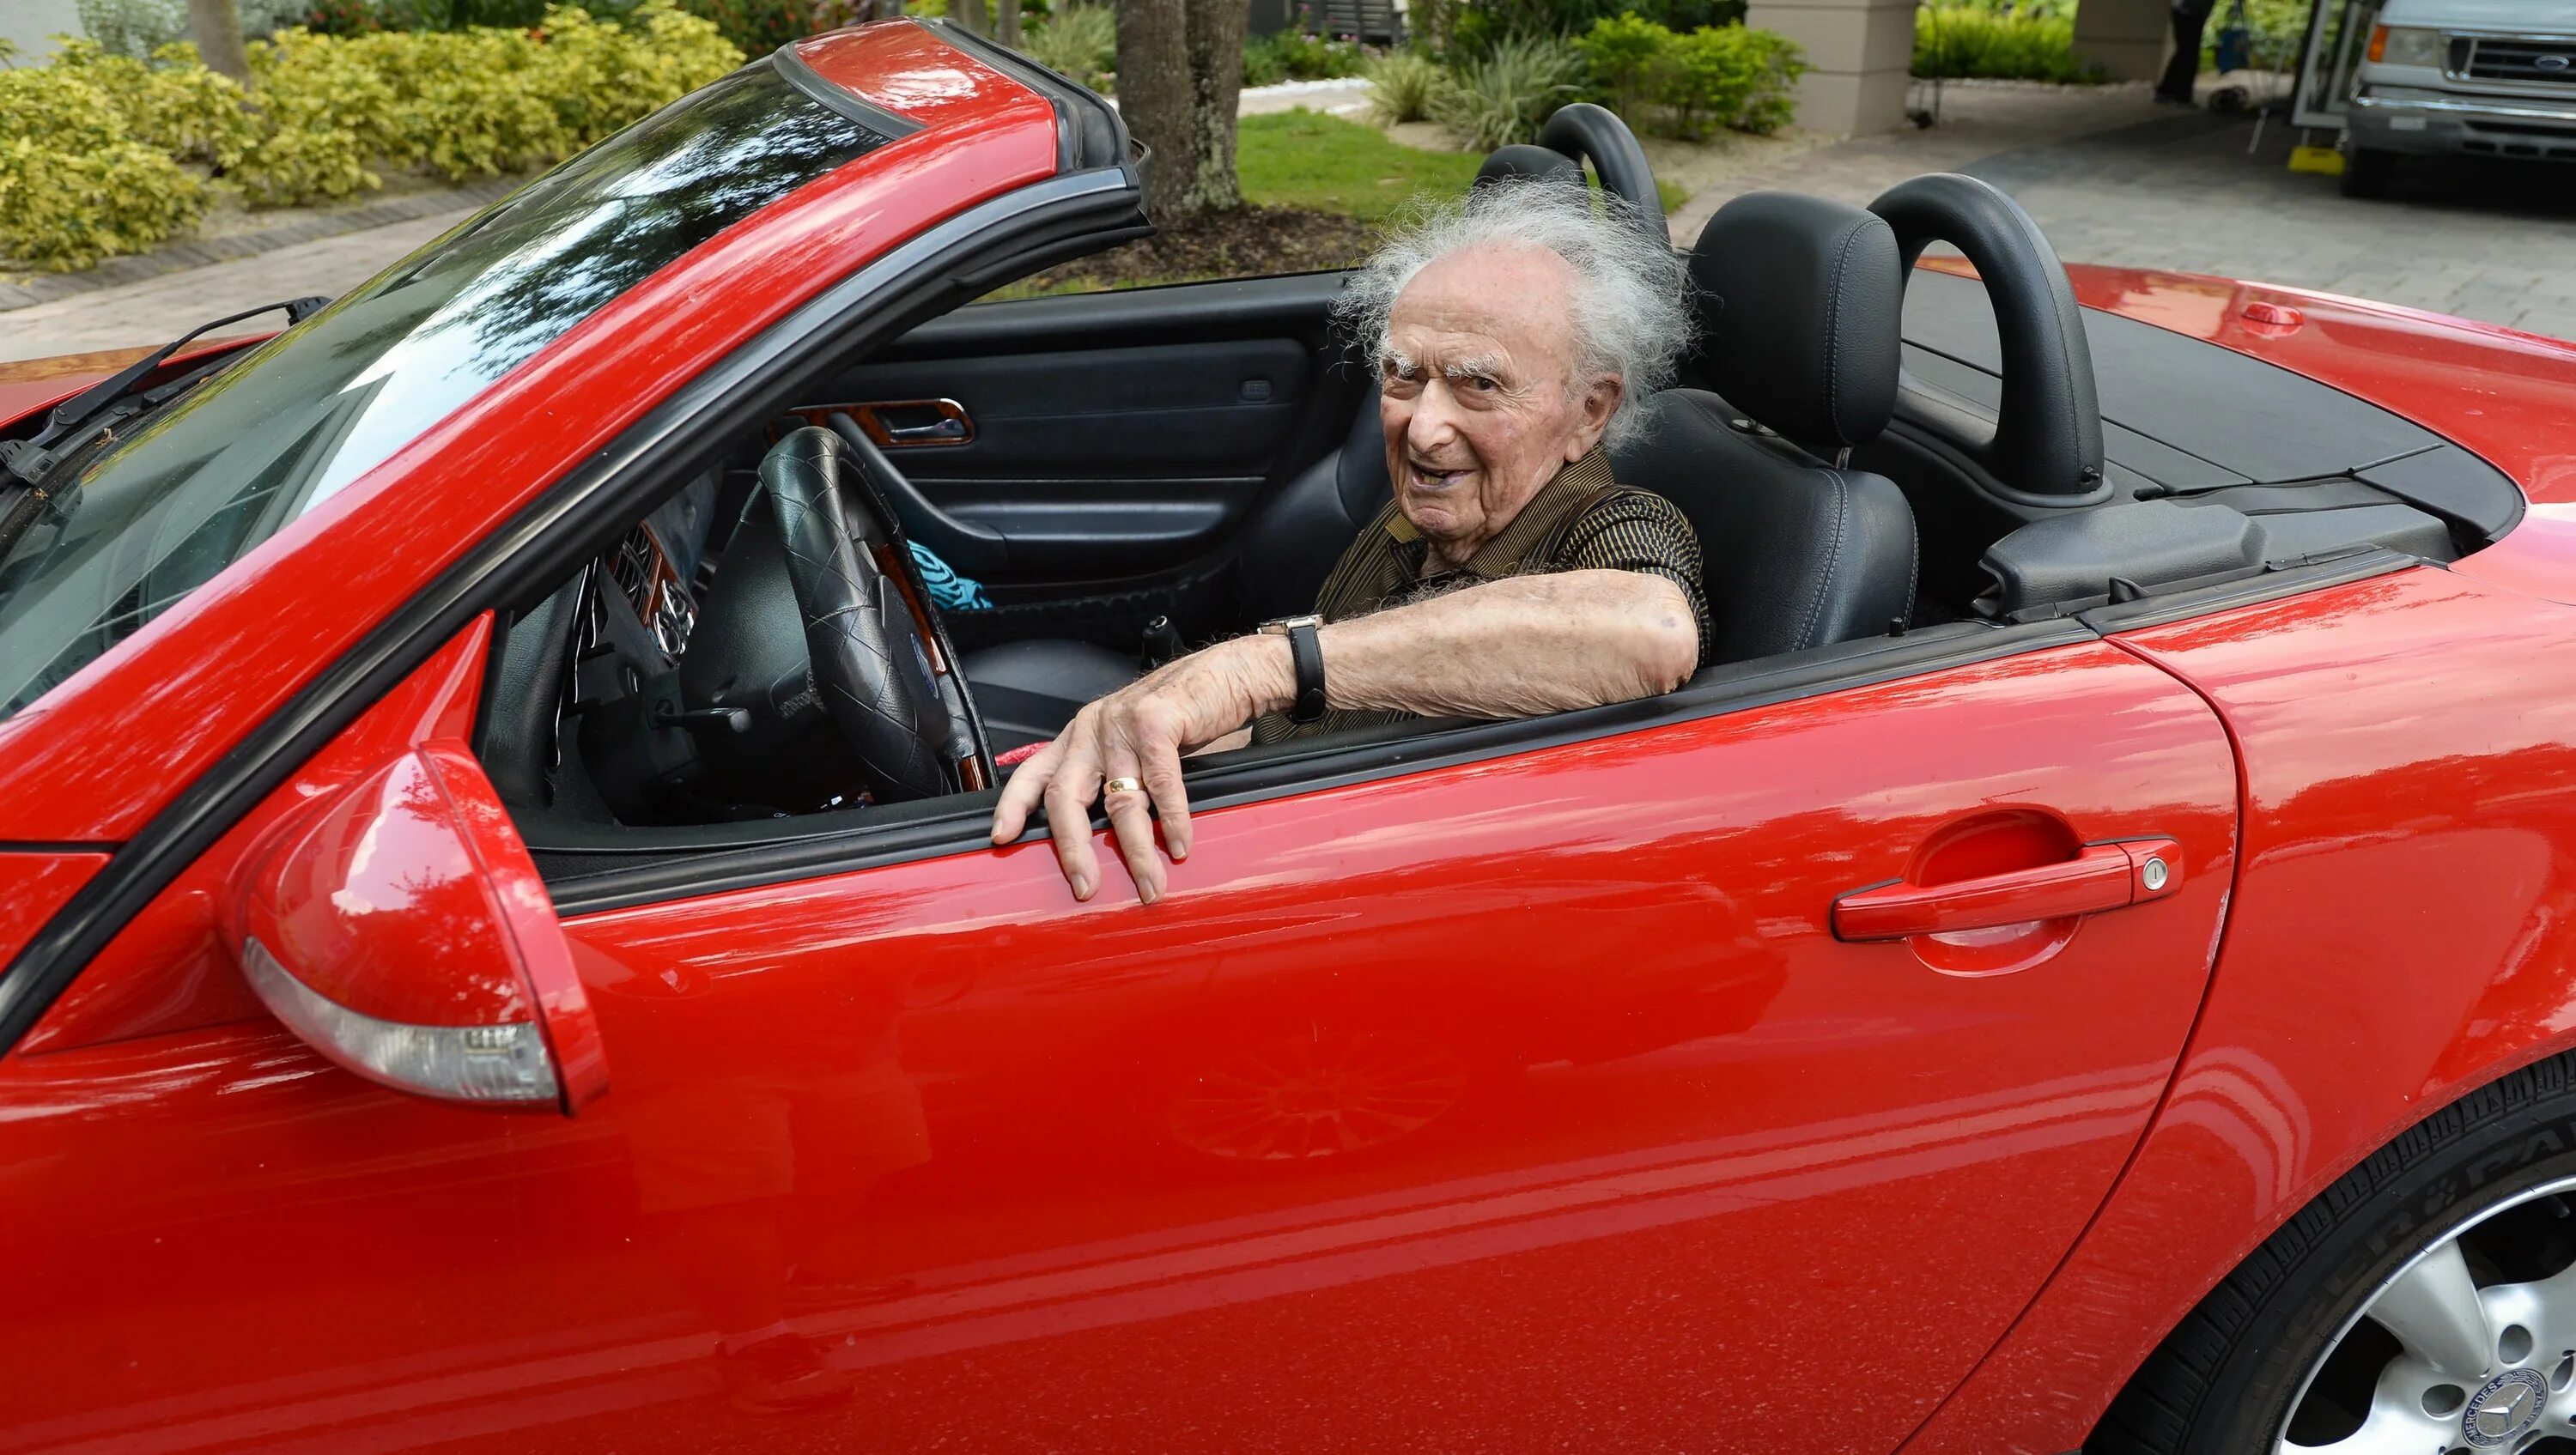 Дедушку в садик водила. Дед на спорткаре. Бабка в спорткаре. Пенсионеры в кабриолете. Пенсионеры на авто.